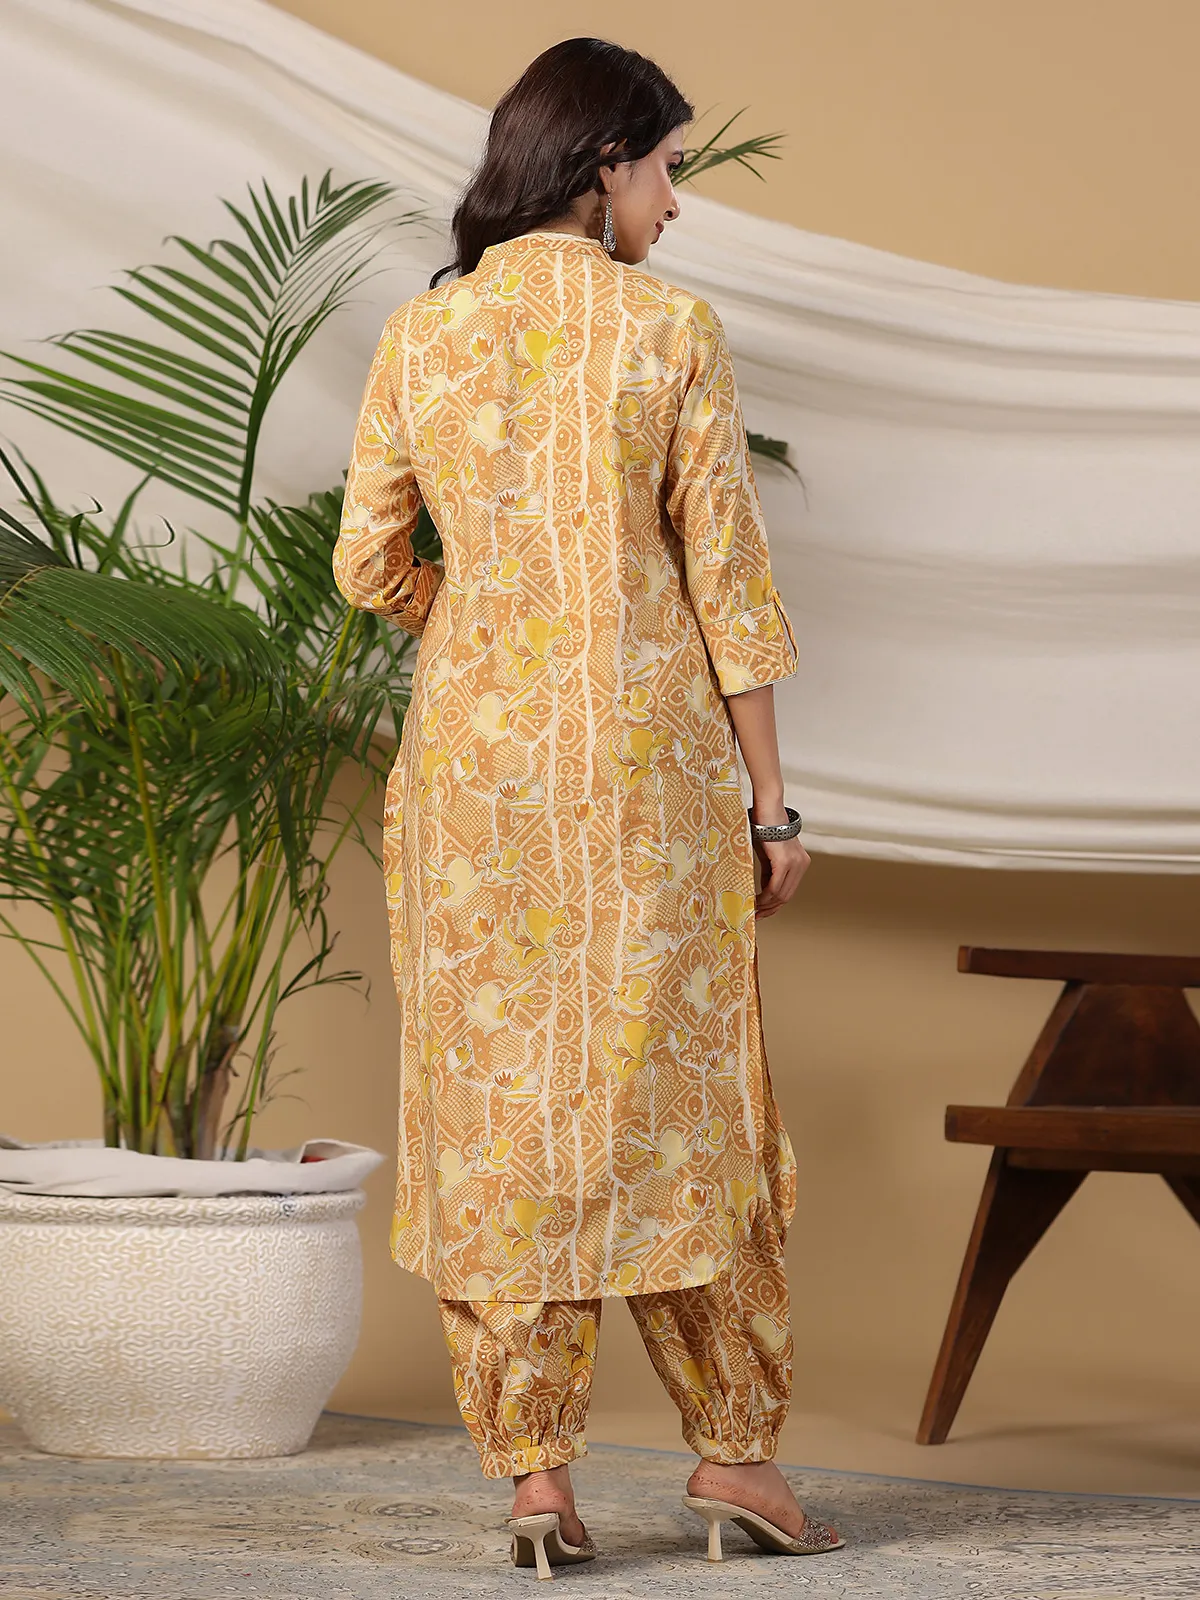 Fabulous yellow cotton kurti with salwar